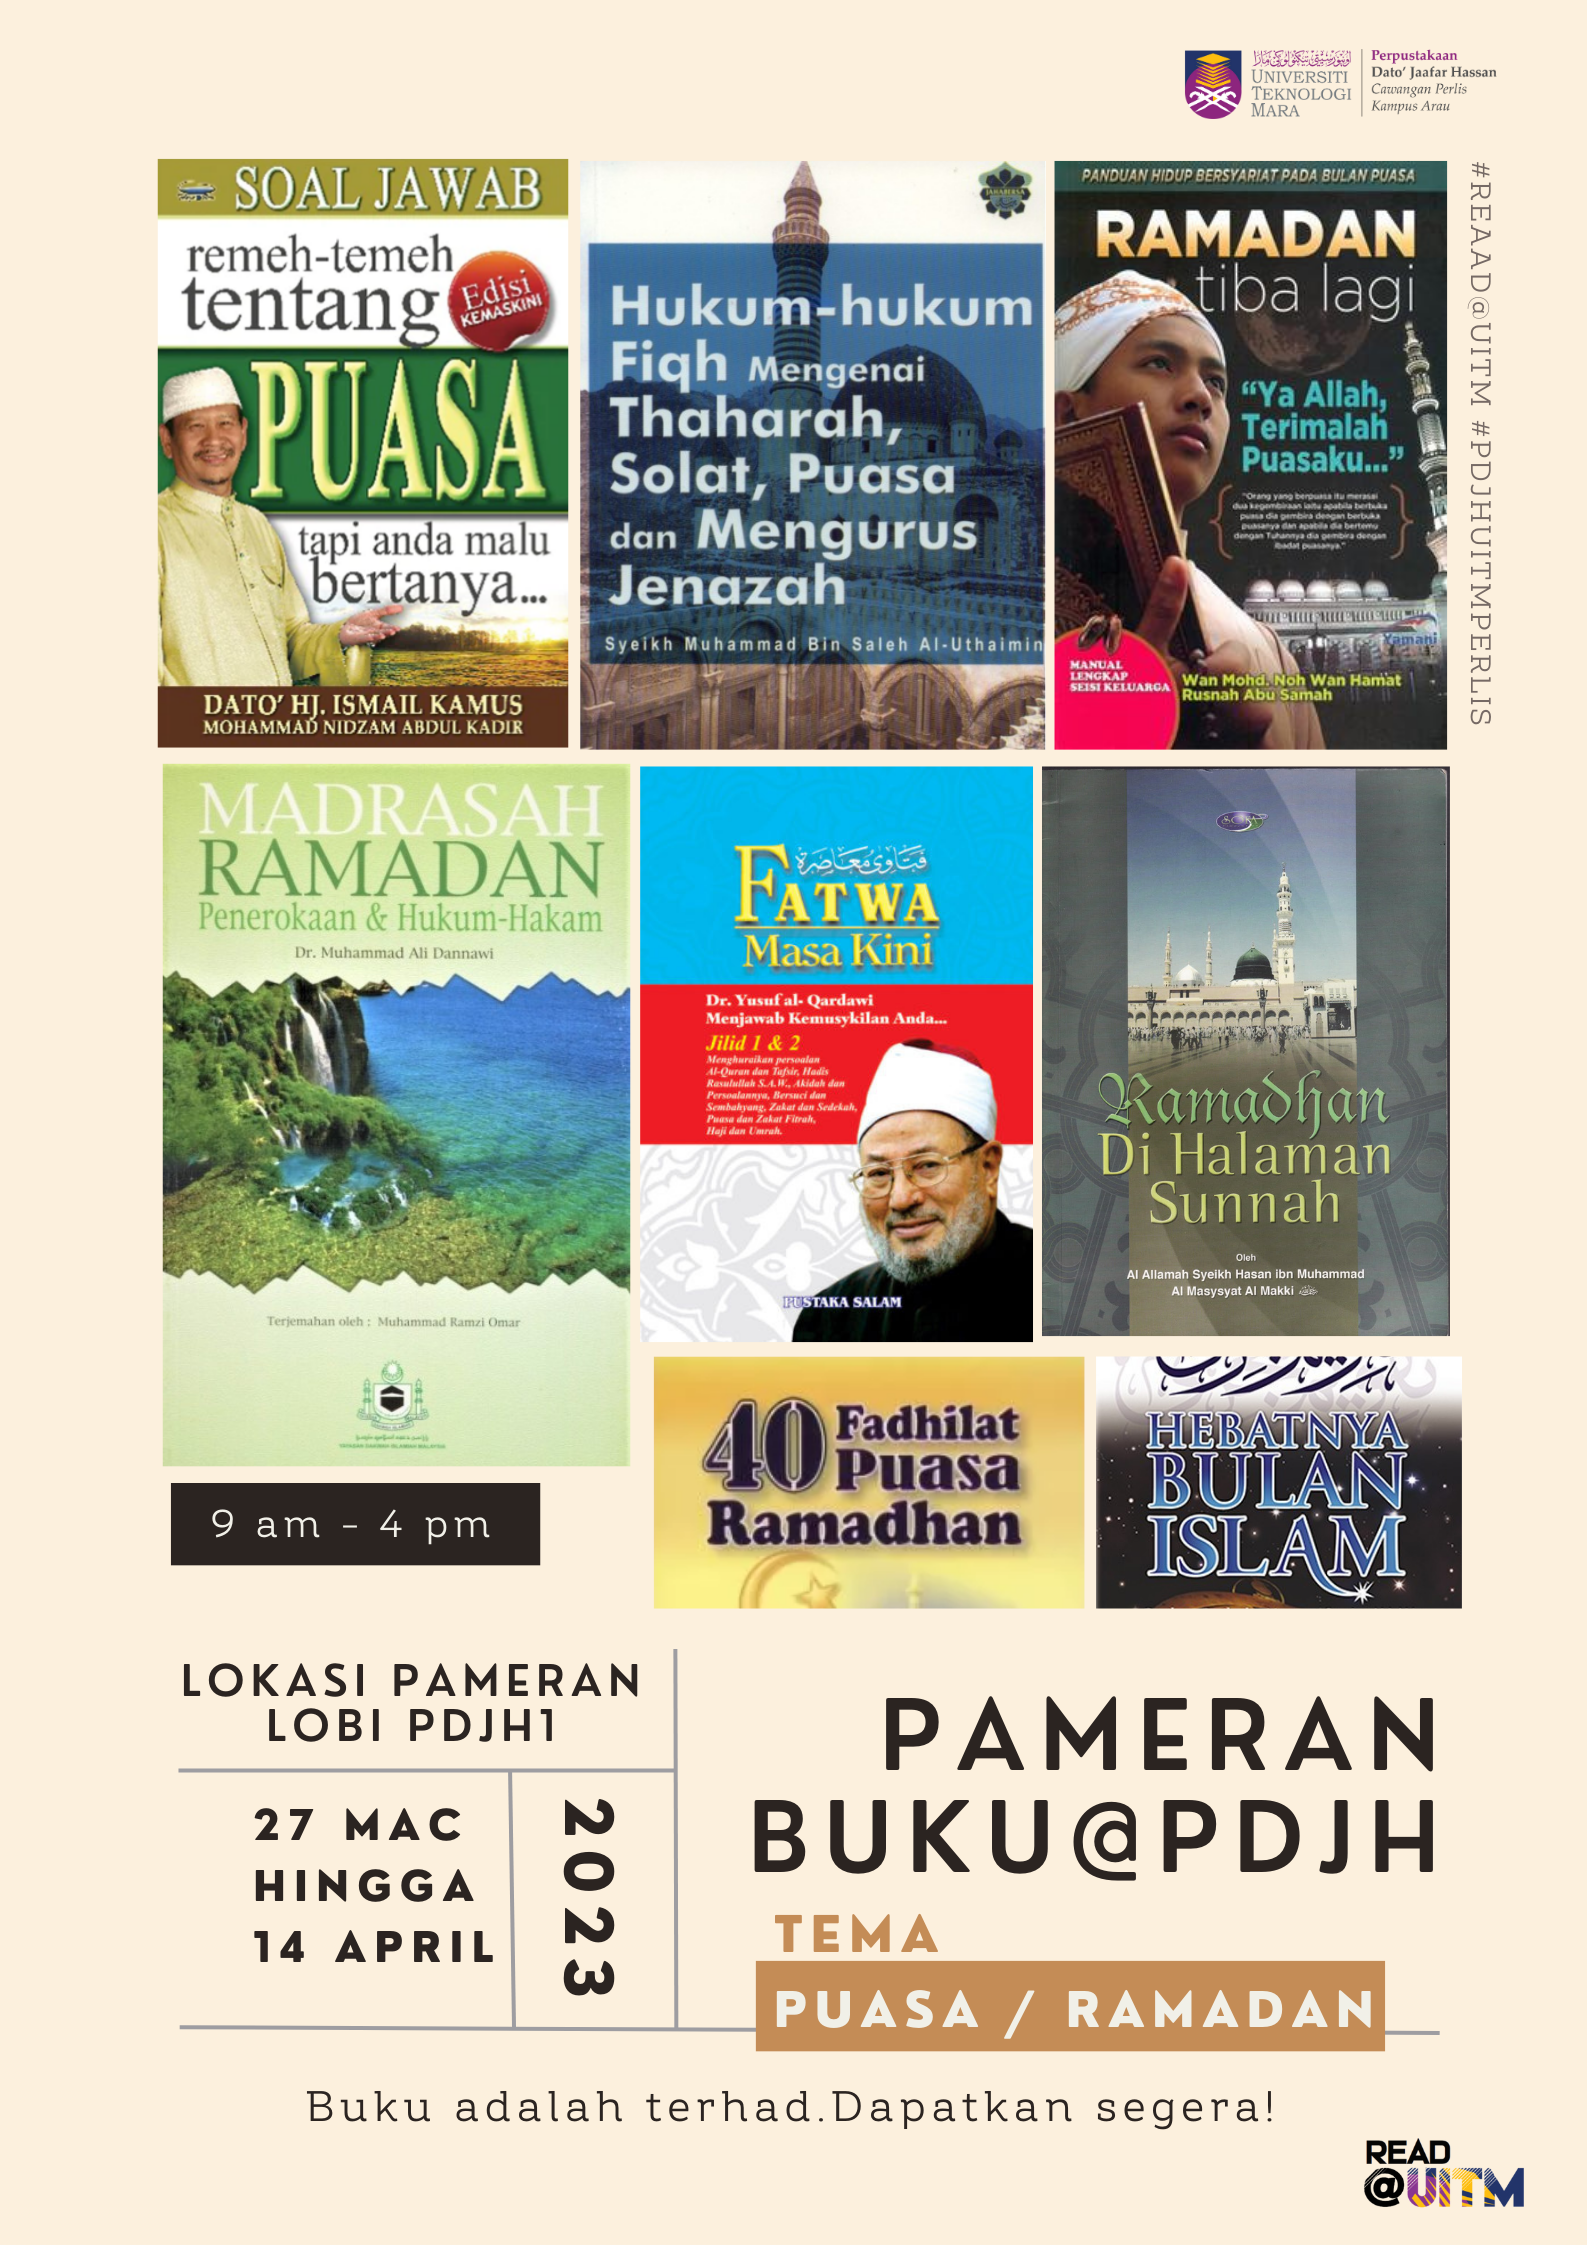 Pameran Buku @PDJH 2023: Puasa dan Ramadan